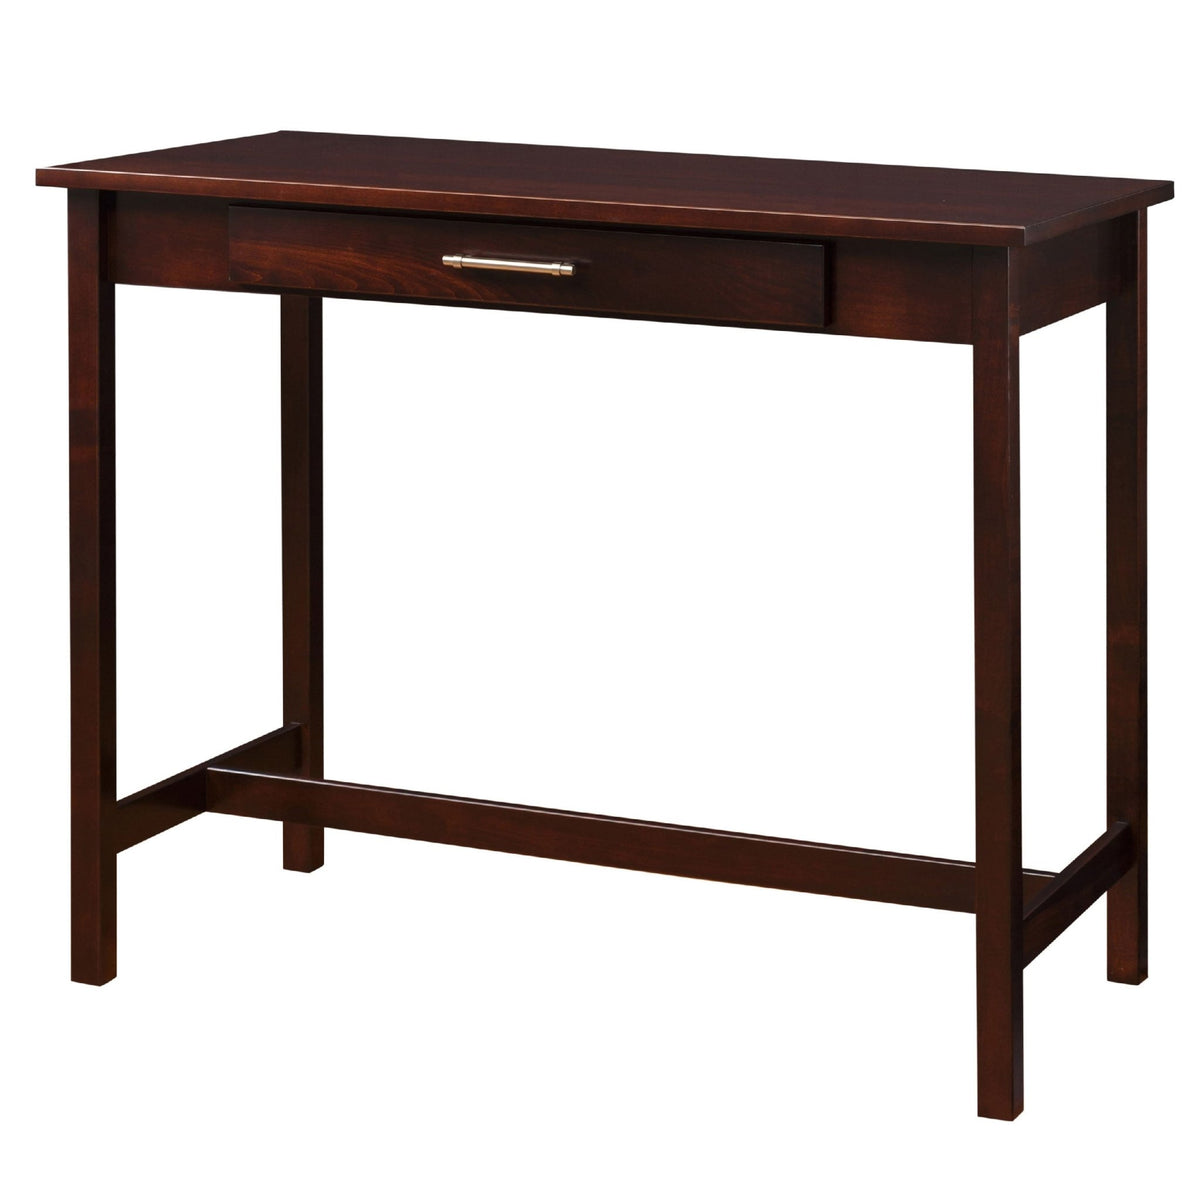 Eshton Stand Up Desk - snyders.furniture